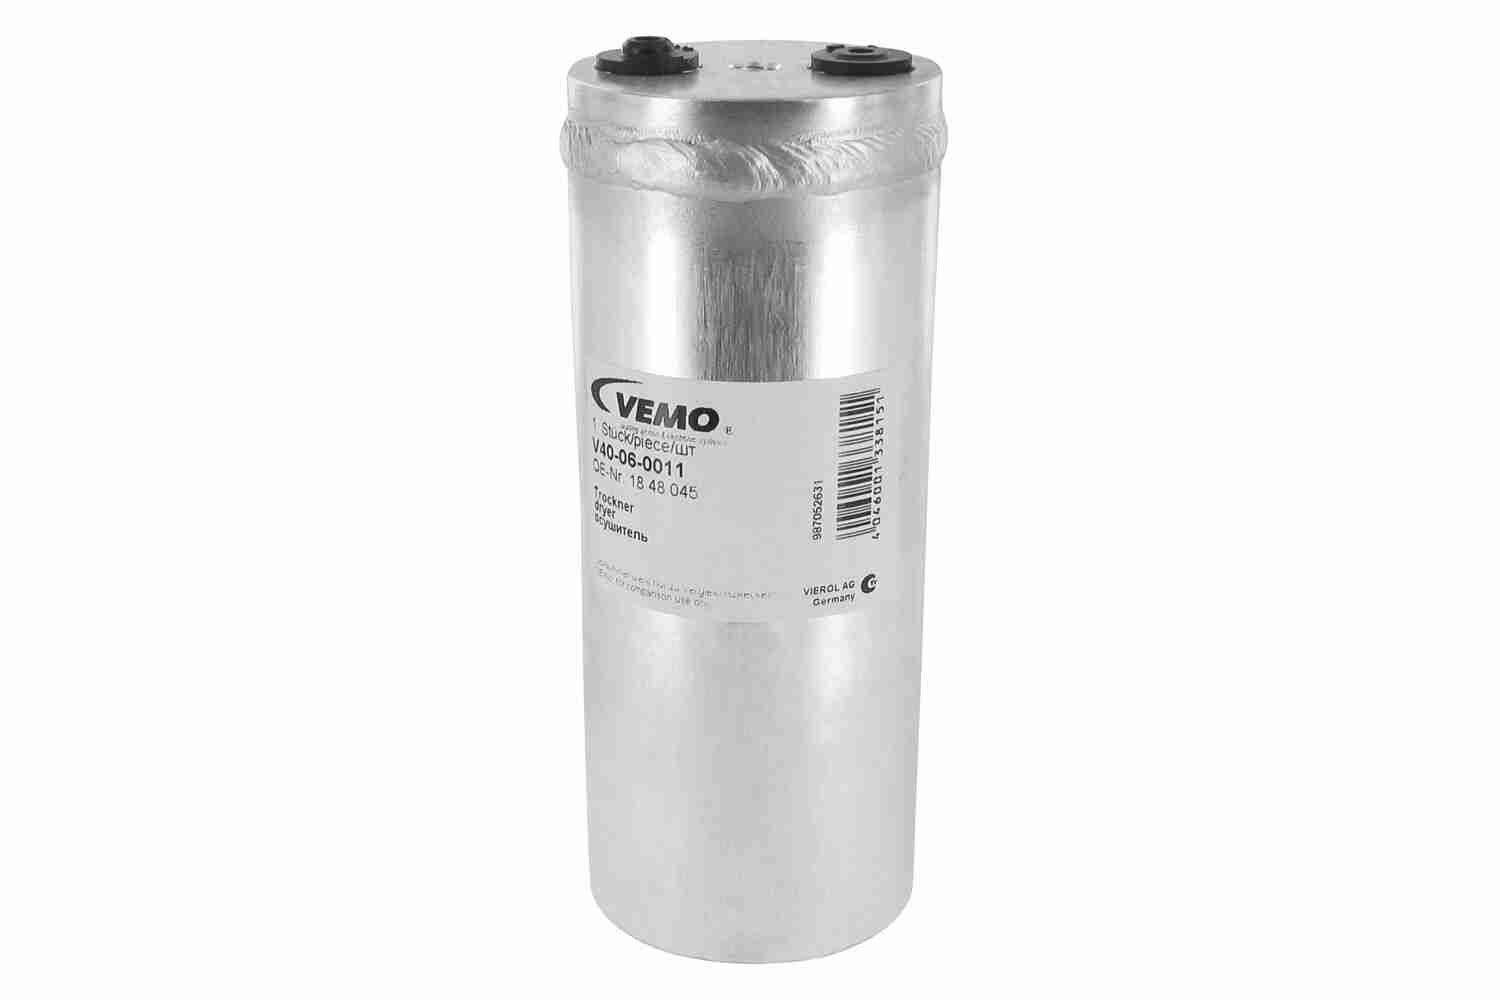 VEMO Original Quality Aluminium Receiver drier V40-06-0011 buy